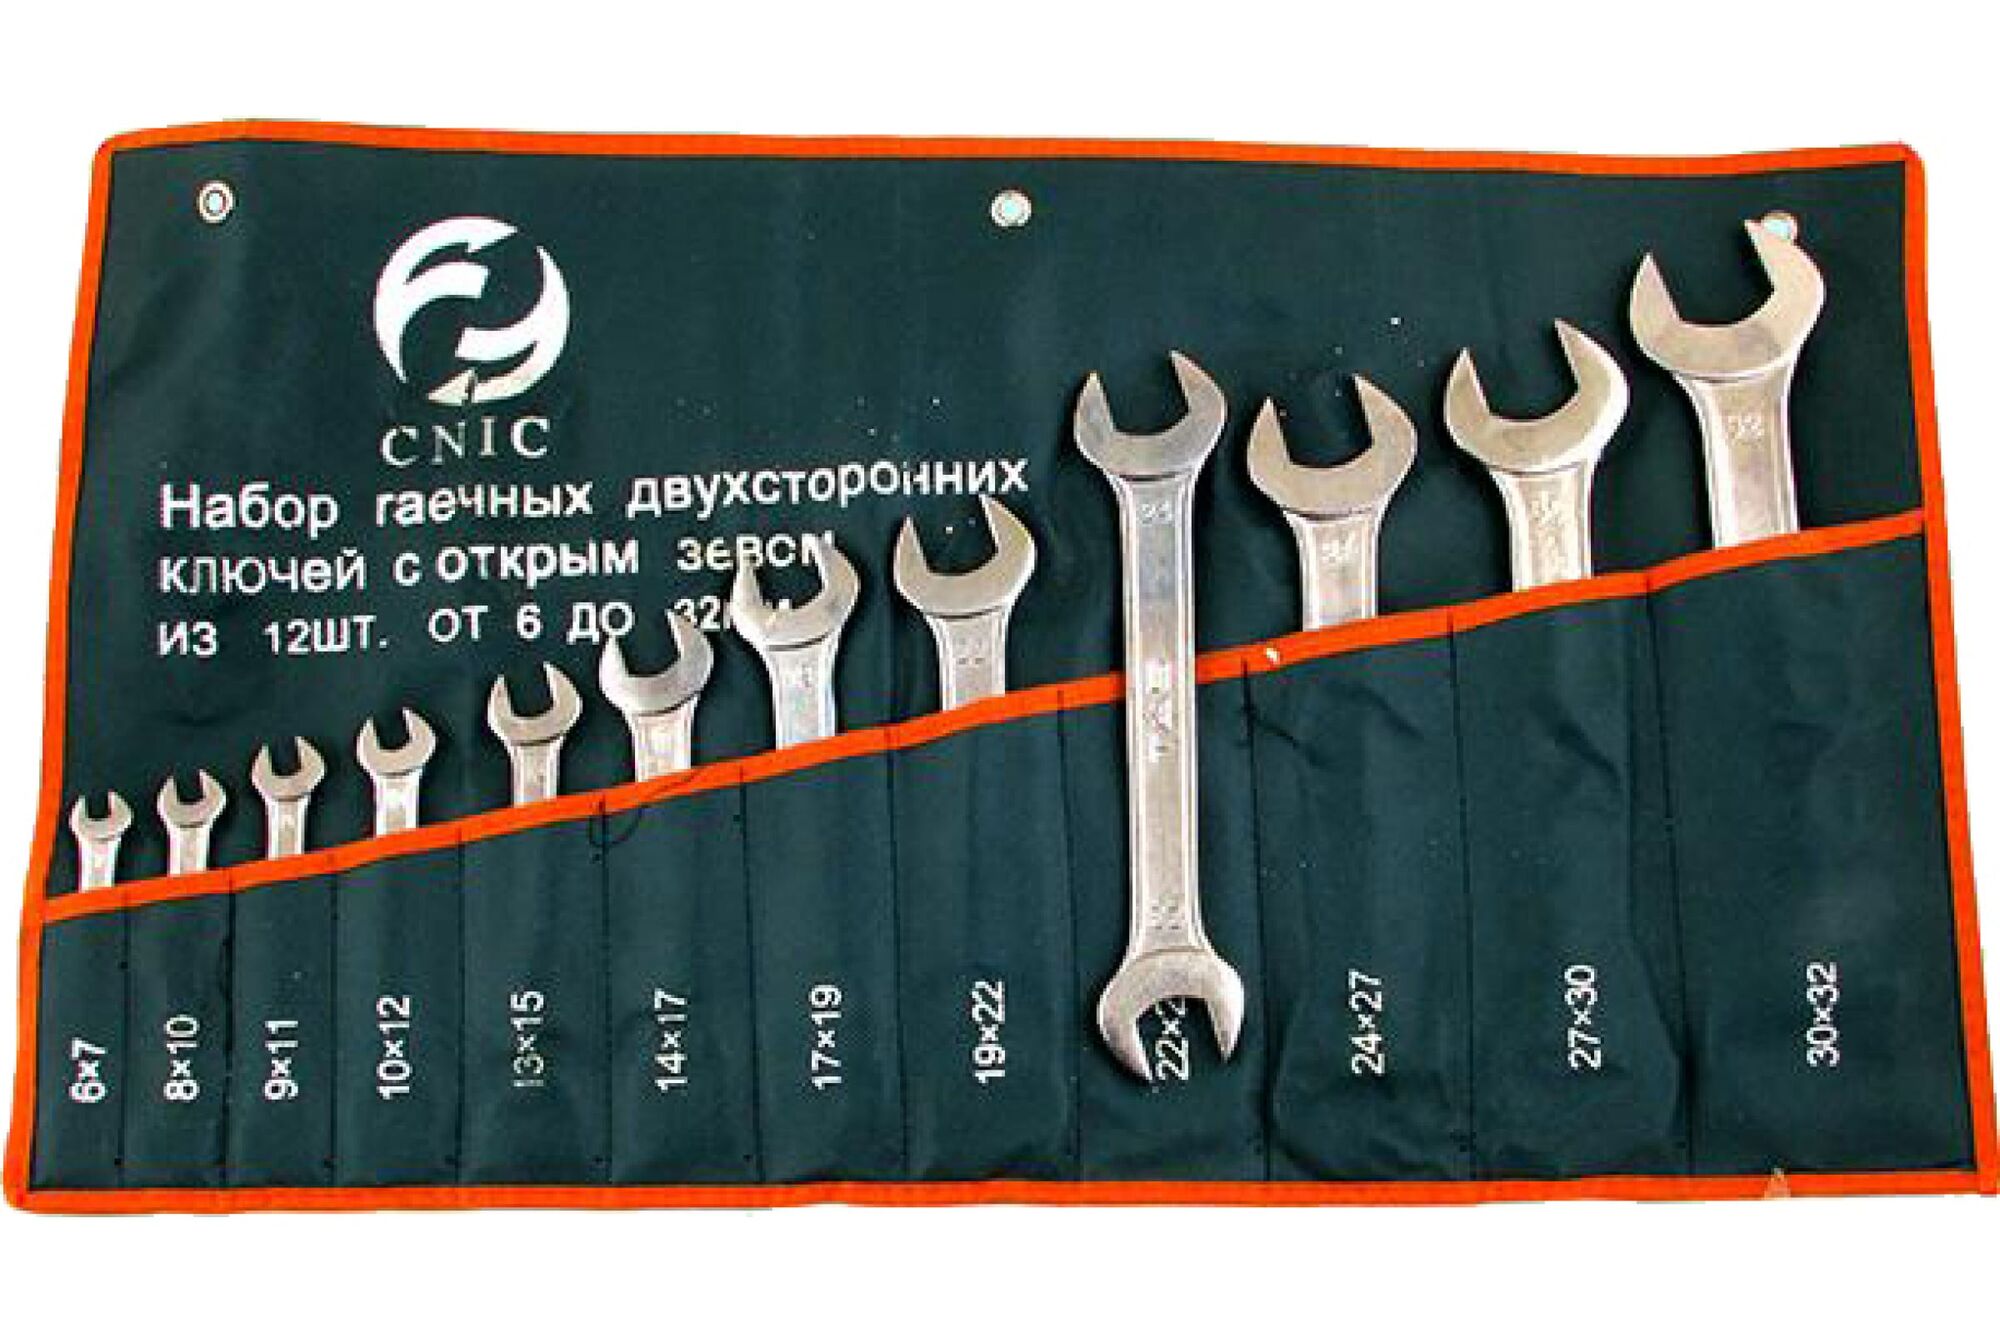 Набор ключей CNIC рожковых из 12-ти шт. 6x7 - 30x32 покрытие хром TS-001 в сумке 35425